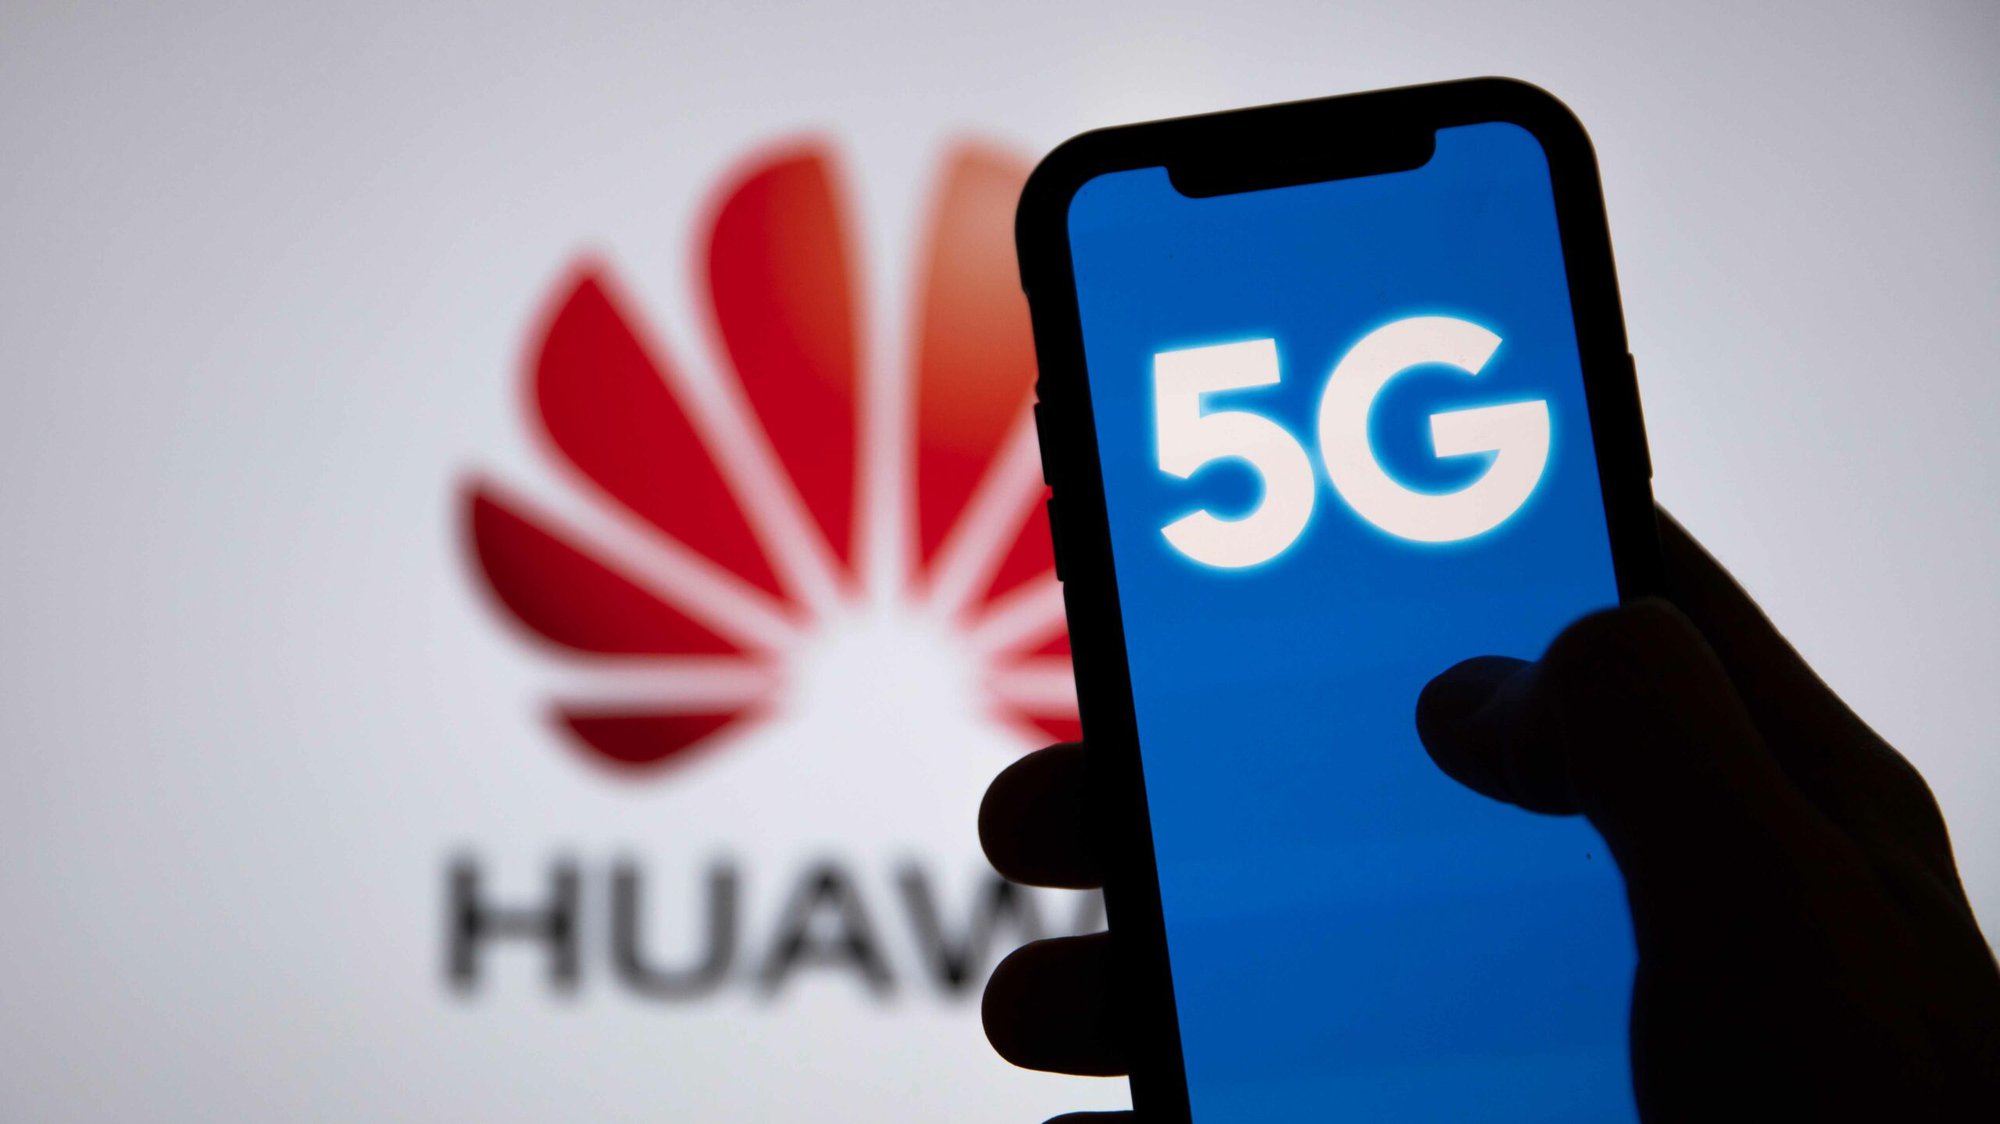 Huawei cho biết trong năm nay họ đã ký hơn 20 thỏa thuận cấp phép bằng sáng chế mới hoặc thỏa thuận mở rộng với các công ty trong các ngành bao gồm điện thoại thông minh, ô tô và viễn thông. Ảnh: @AFP.